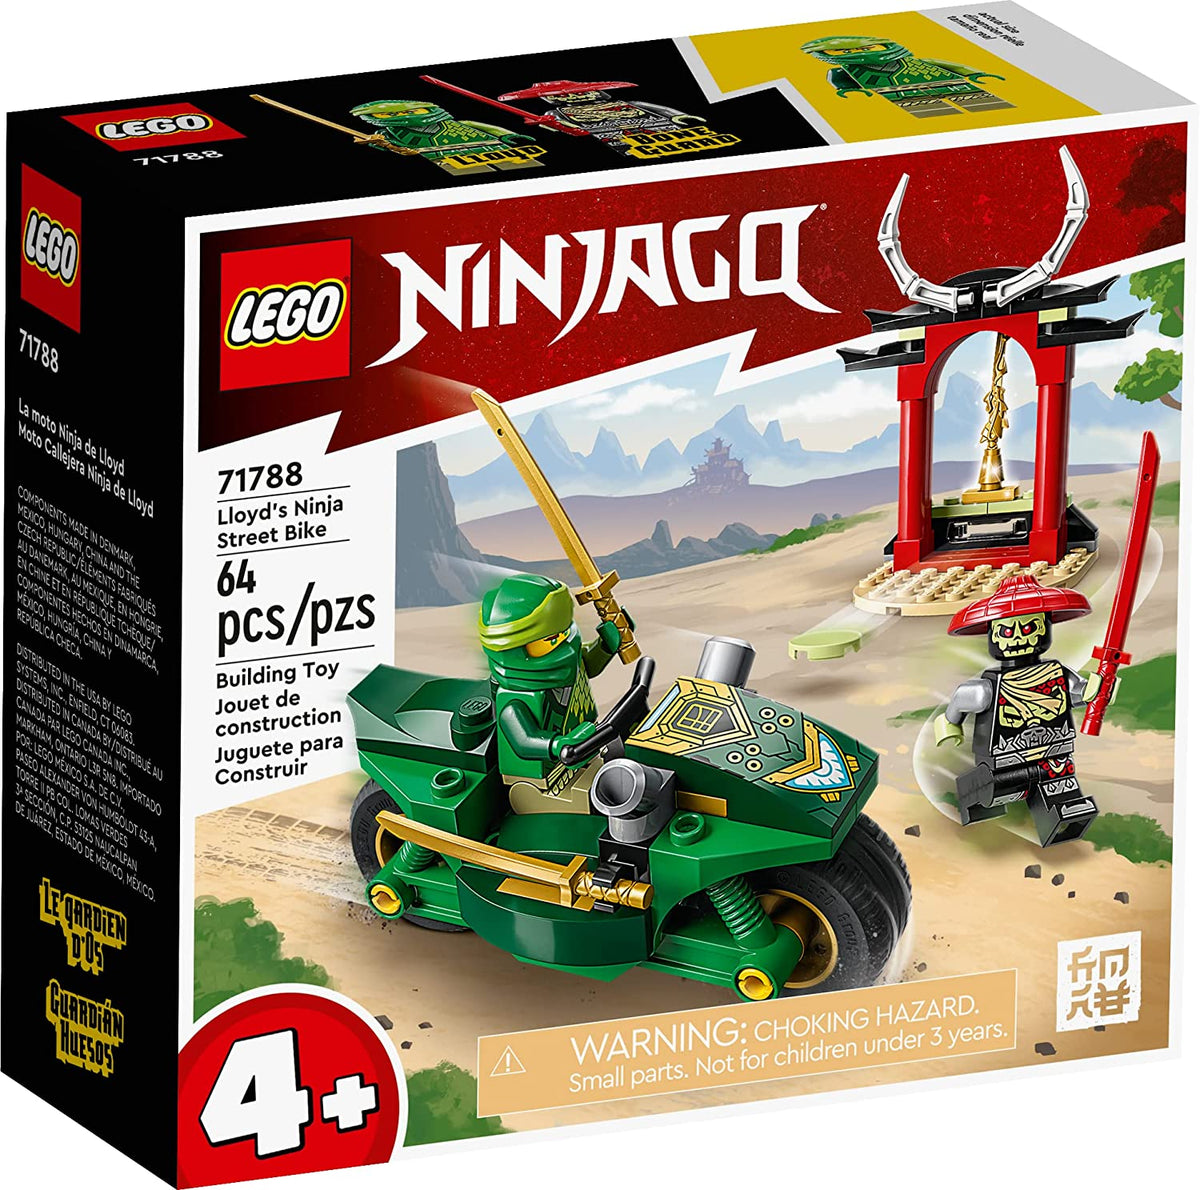 Lego Ninjago 71788 Lloyds Ninja Street Bike